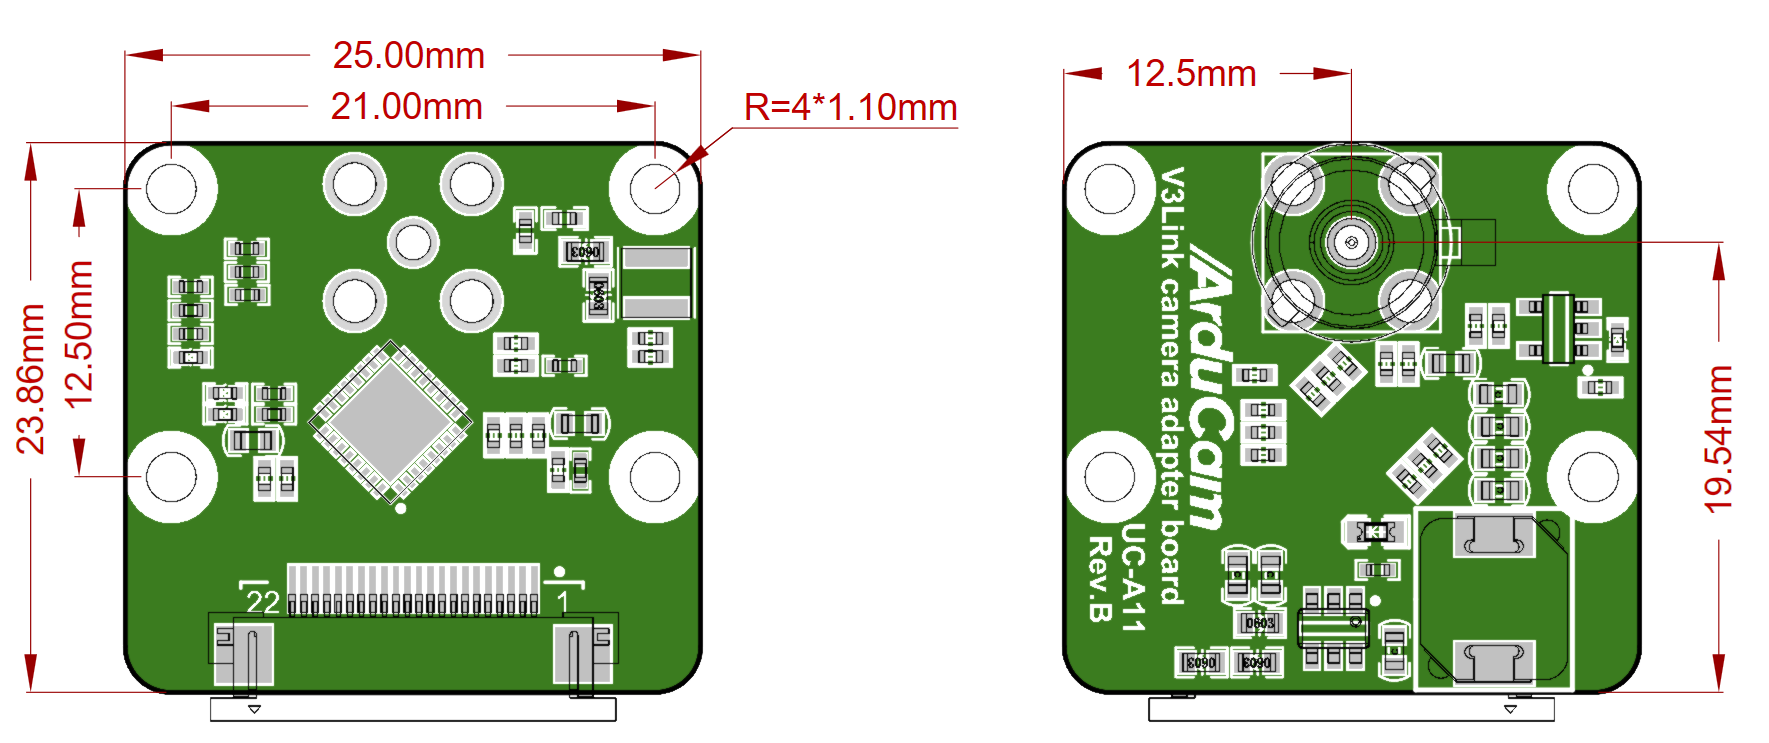 Arducam IMX219 V3Link FPD-Link SerDes Camera Kit for Raspberry Pi - Arducam